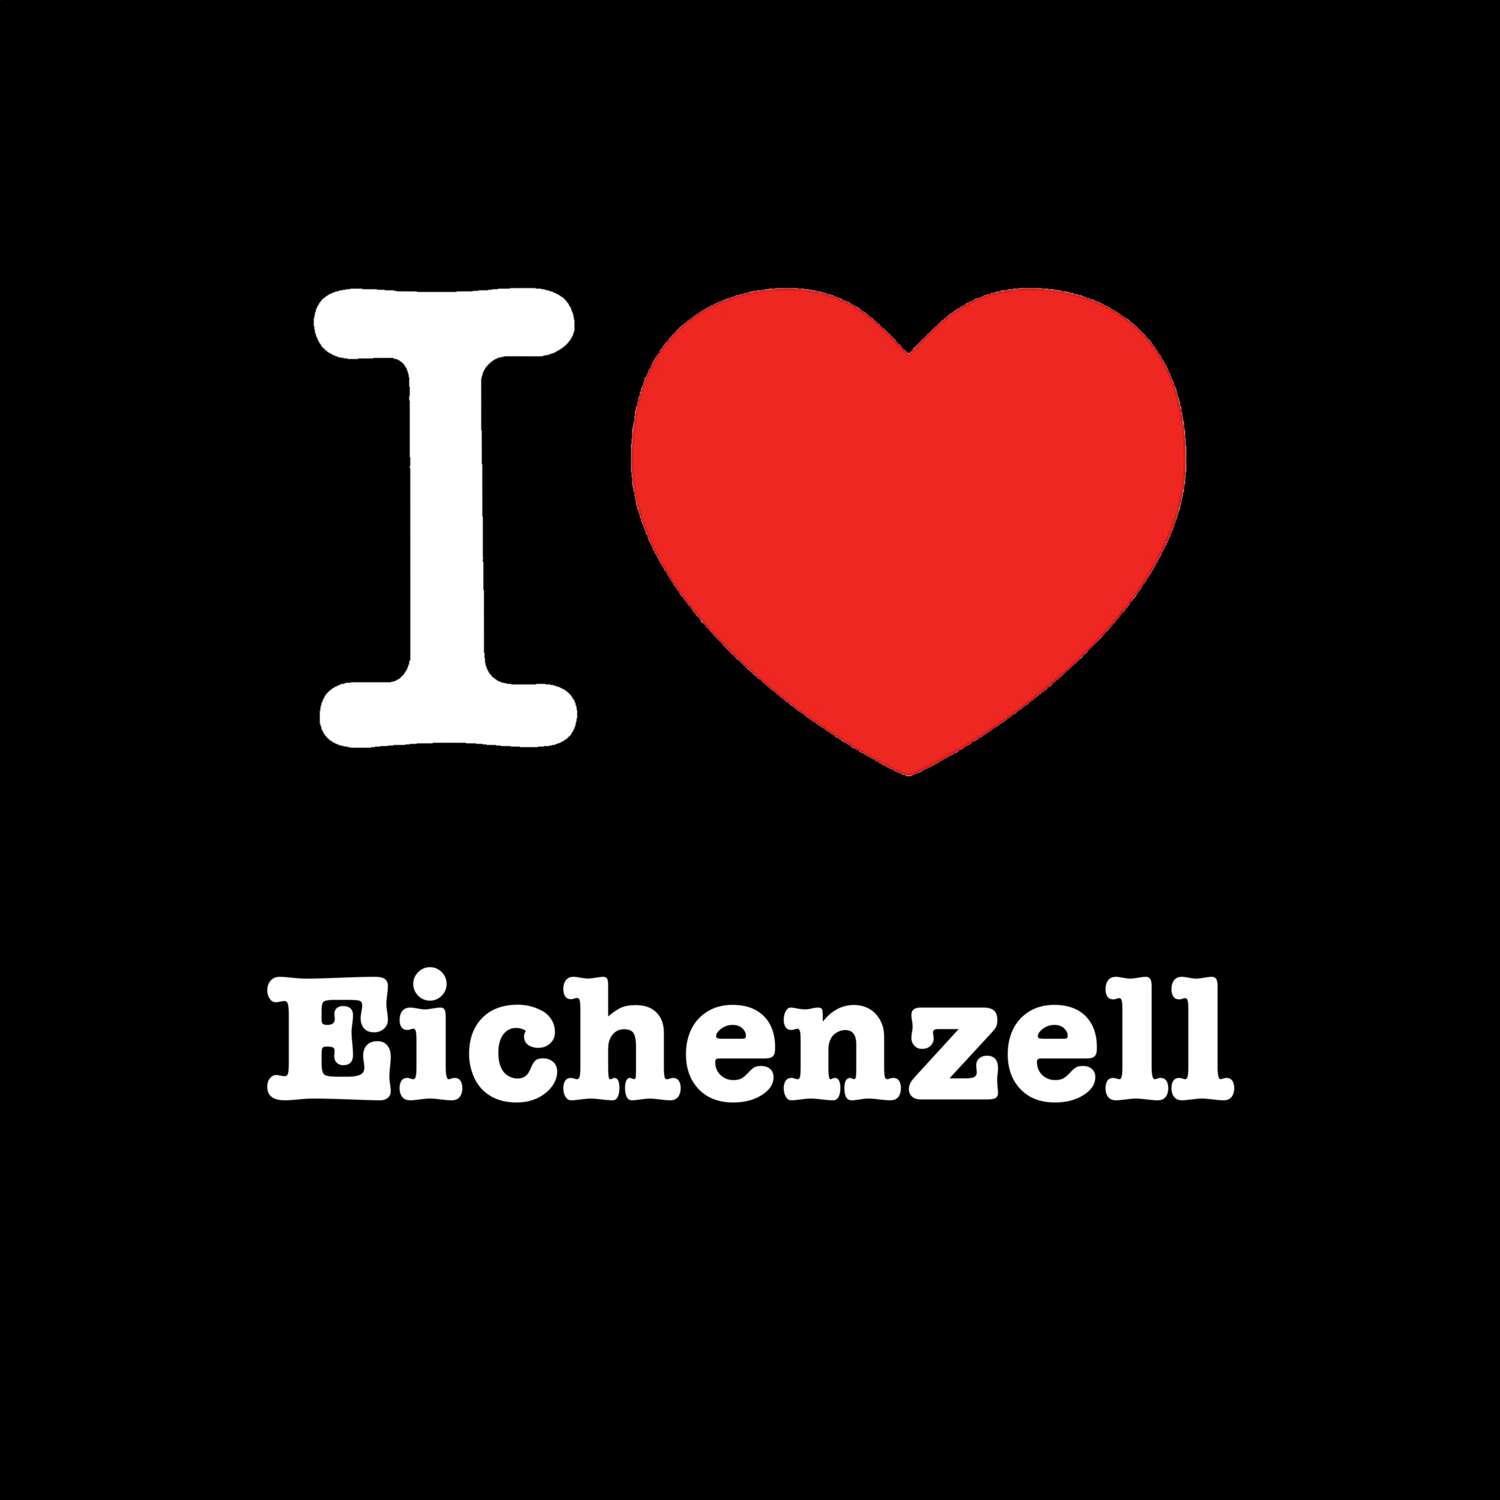 Eichenzell T-Shirt »I love«